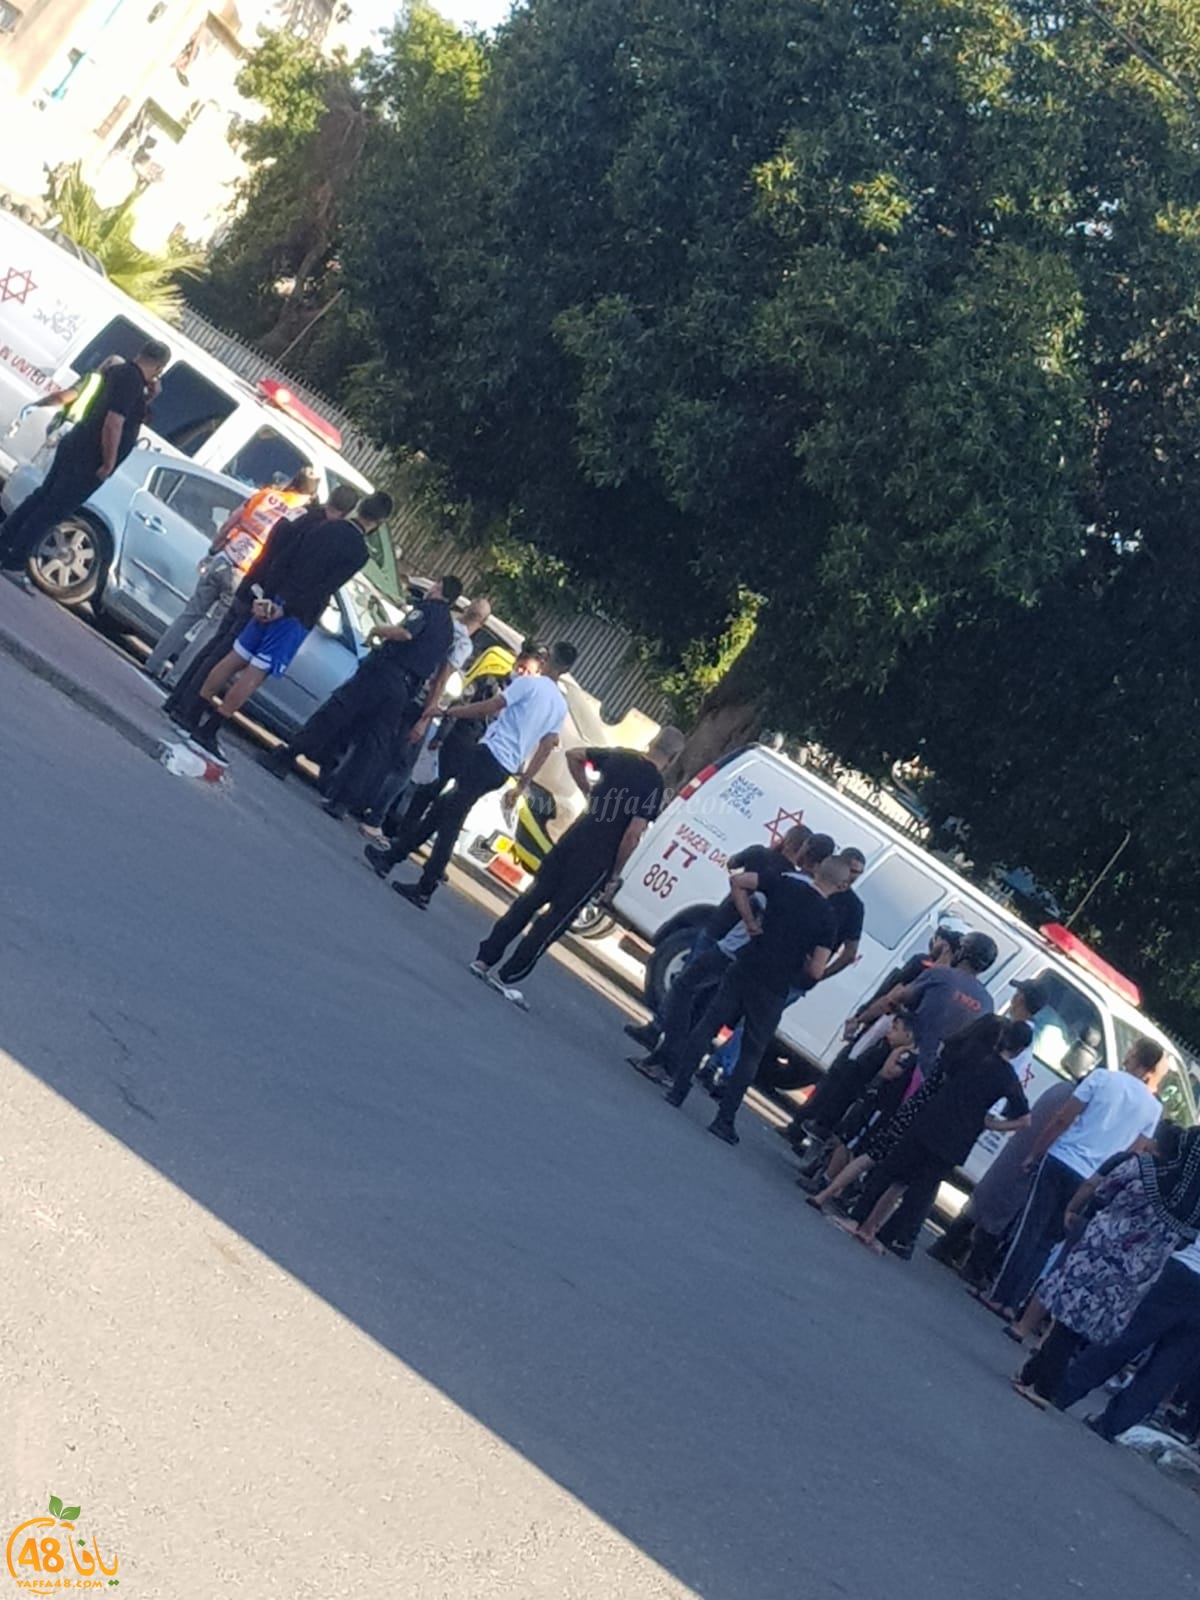  اللد: إصابة طفلة بحادث دهس في حي رمات اشكول